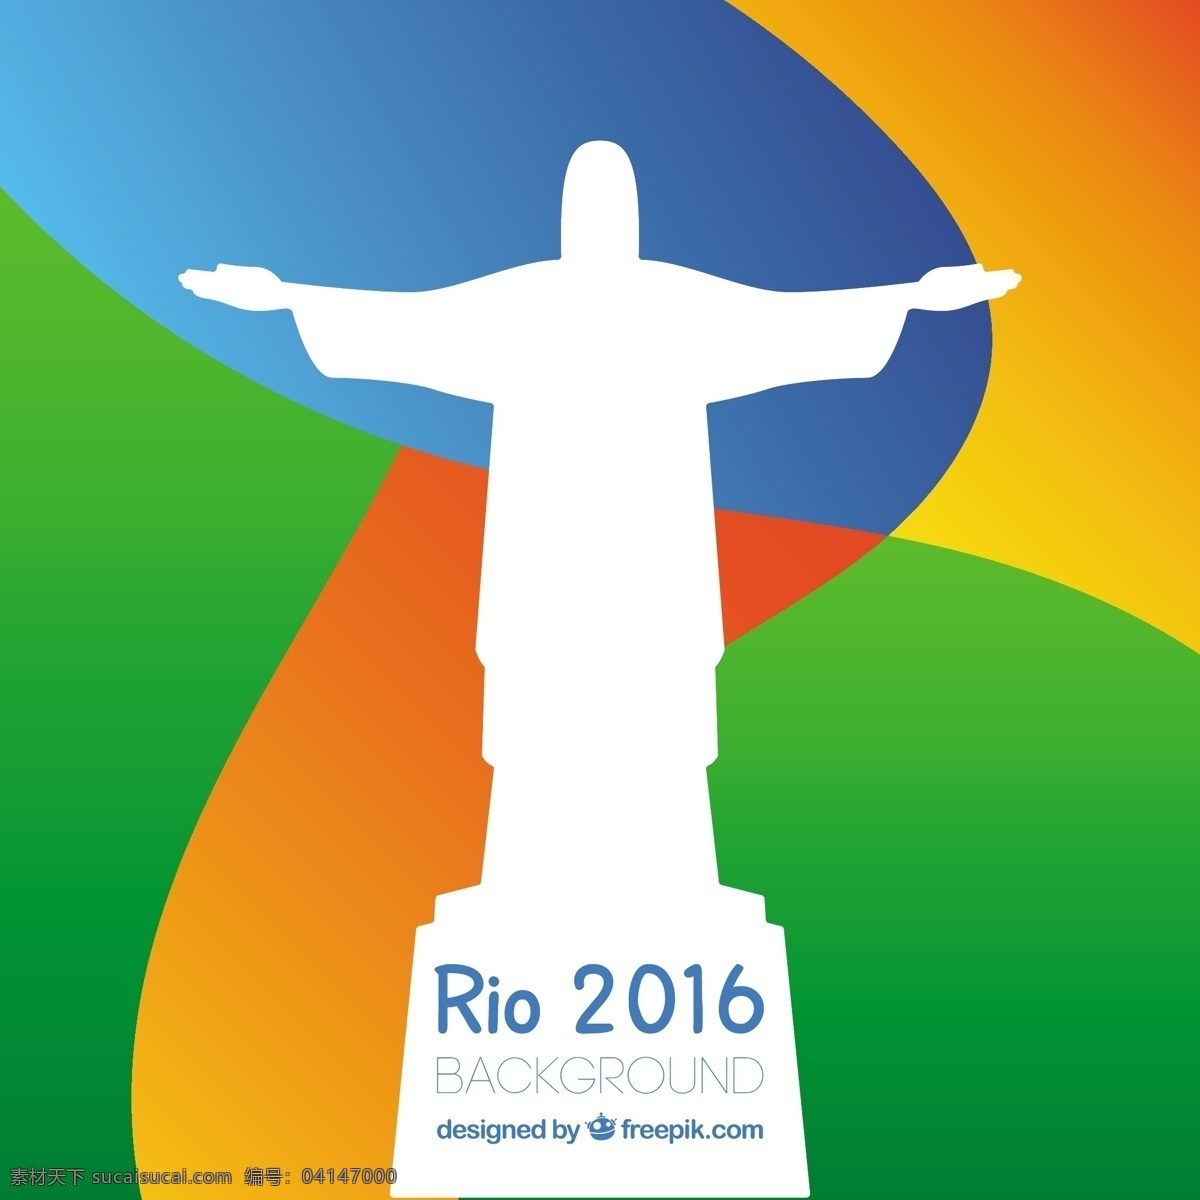 2016 rio 白色 剪影 耶稣 白色剪影 耶稣像 耶稣像剪影 巴西背景 橙色